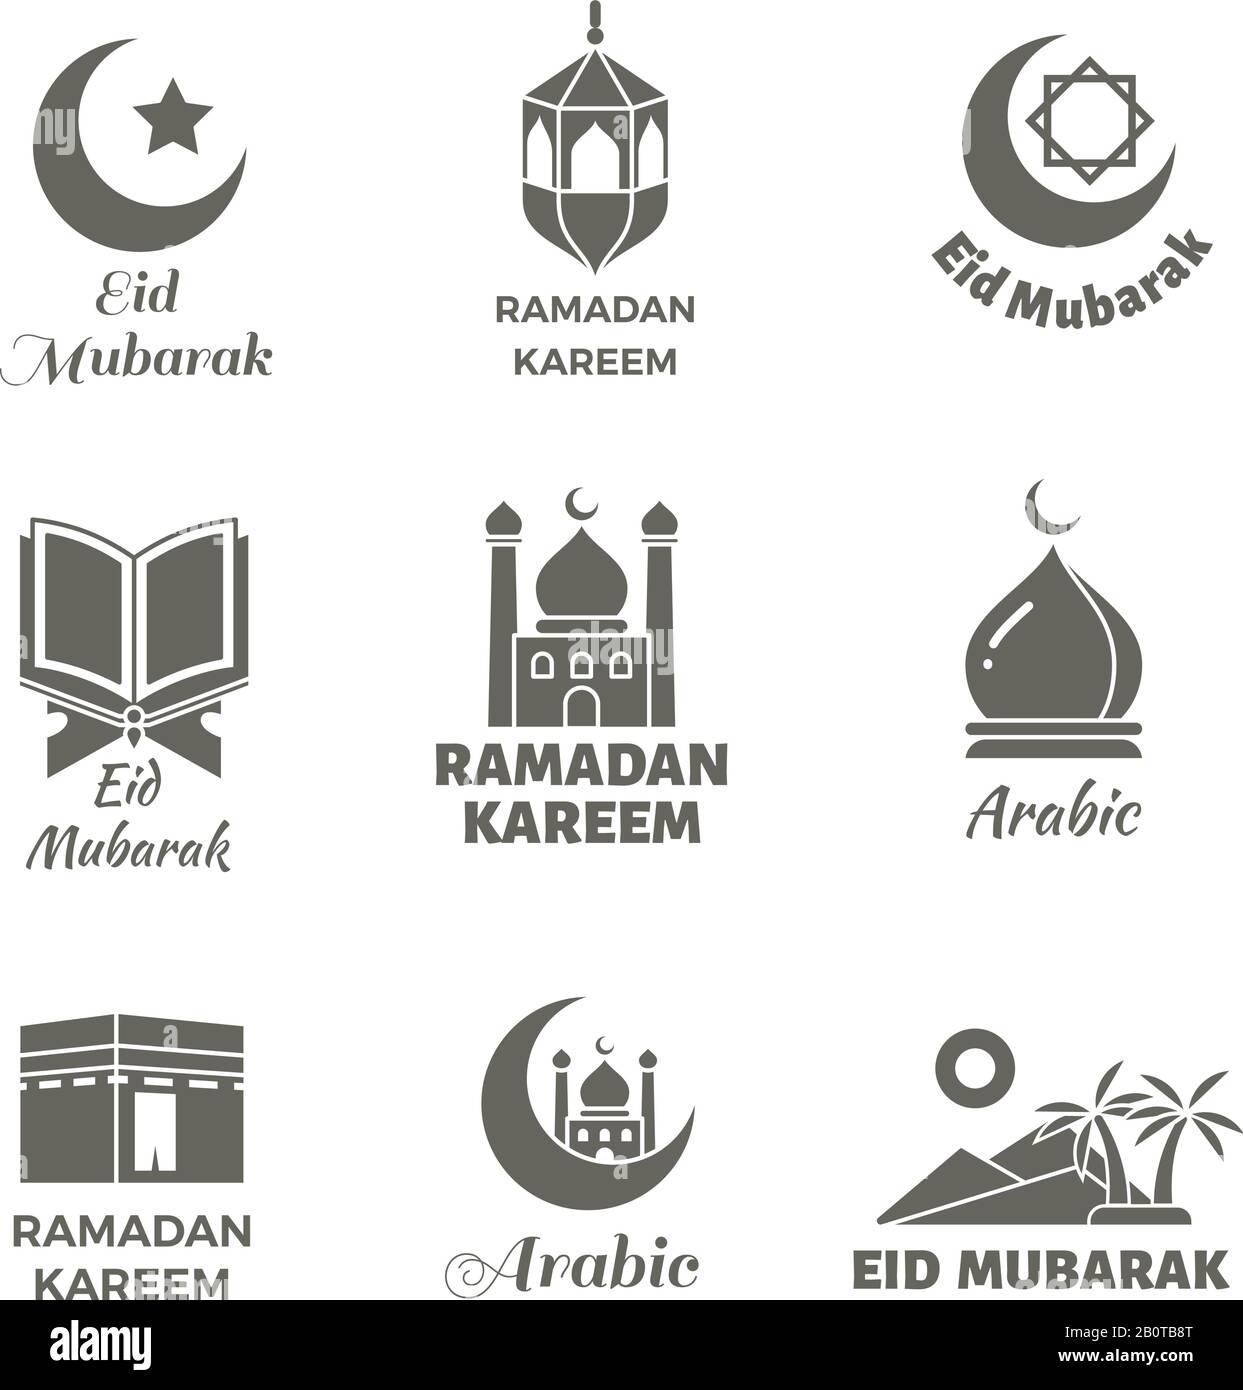 Arabisches muslimisches Vektorlogo gesetzt. Islamische spirituelle Etiketten. Islamischer Urlaub ramadan kareem, Illustration arabischer Kultururlaub Stock Vektor